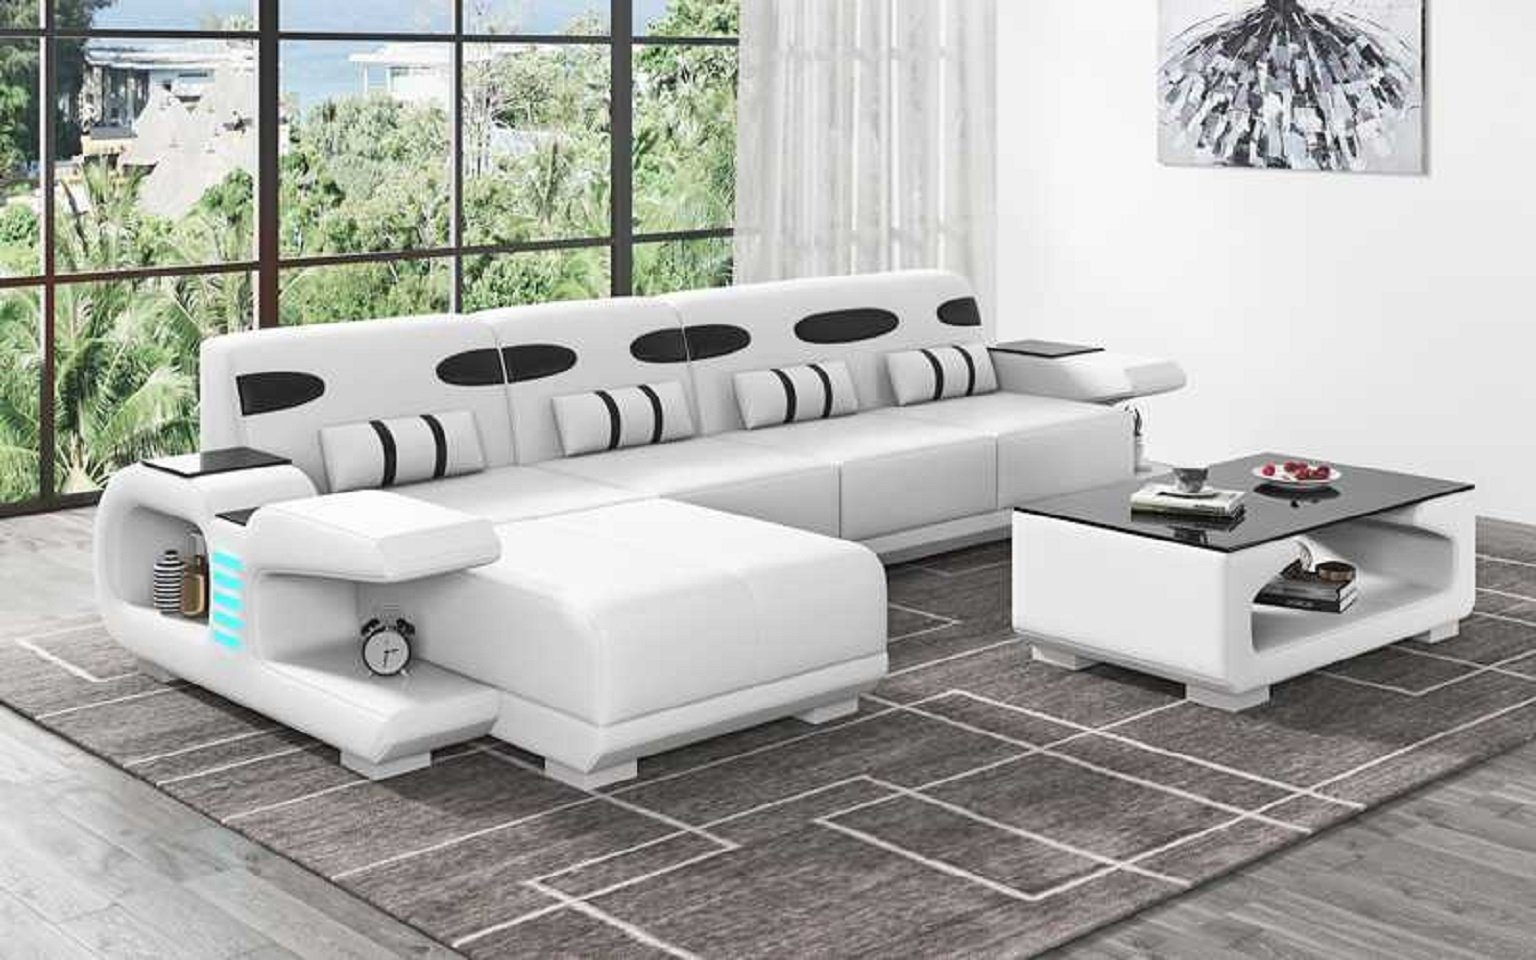 JVmoebel Ecksofa Design Ecksofa L Form Liege Modern Ledersofa Kunstleder Sofa Sofas, 3 Teile, Made in Europe Weiß